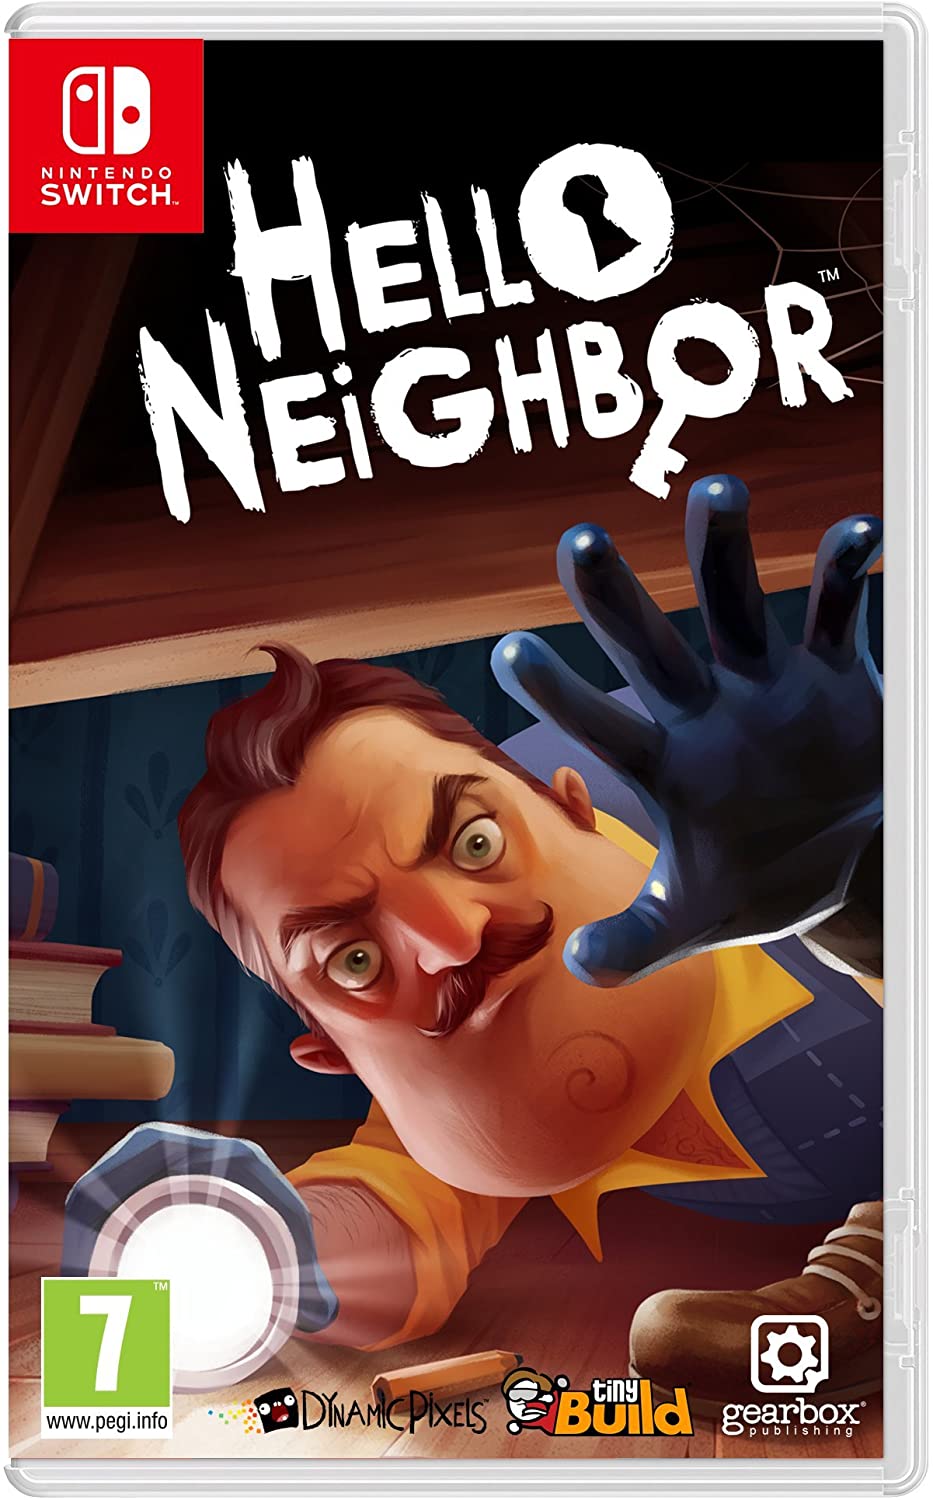 Hello neighbor act 2